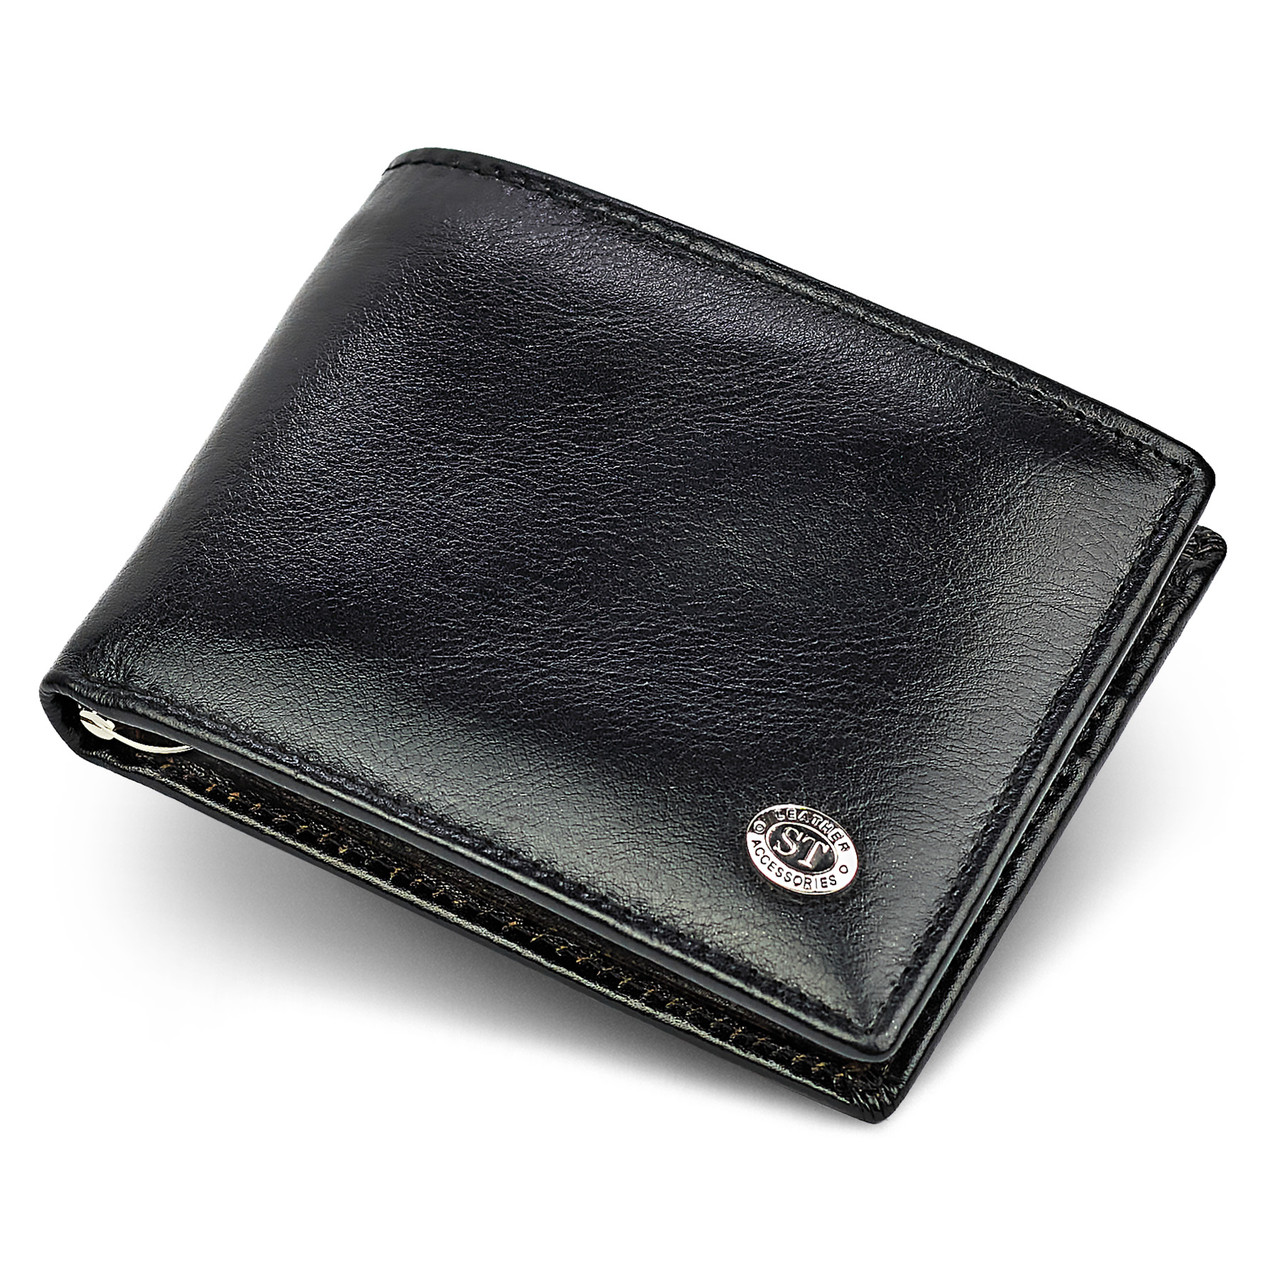 Чоловіче шкіряне портмоне із затискачем ST Leather B460 Чорне